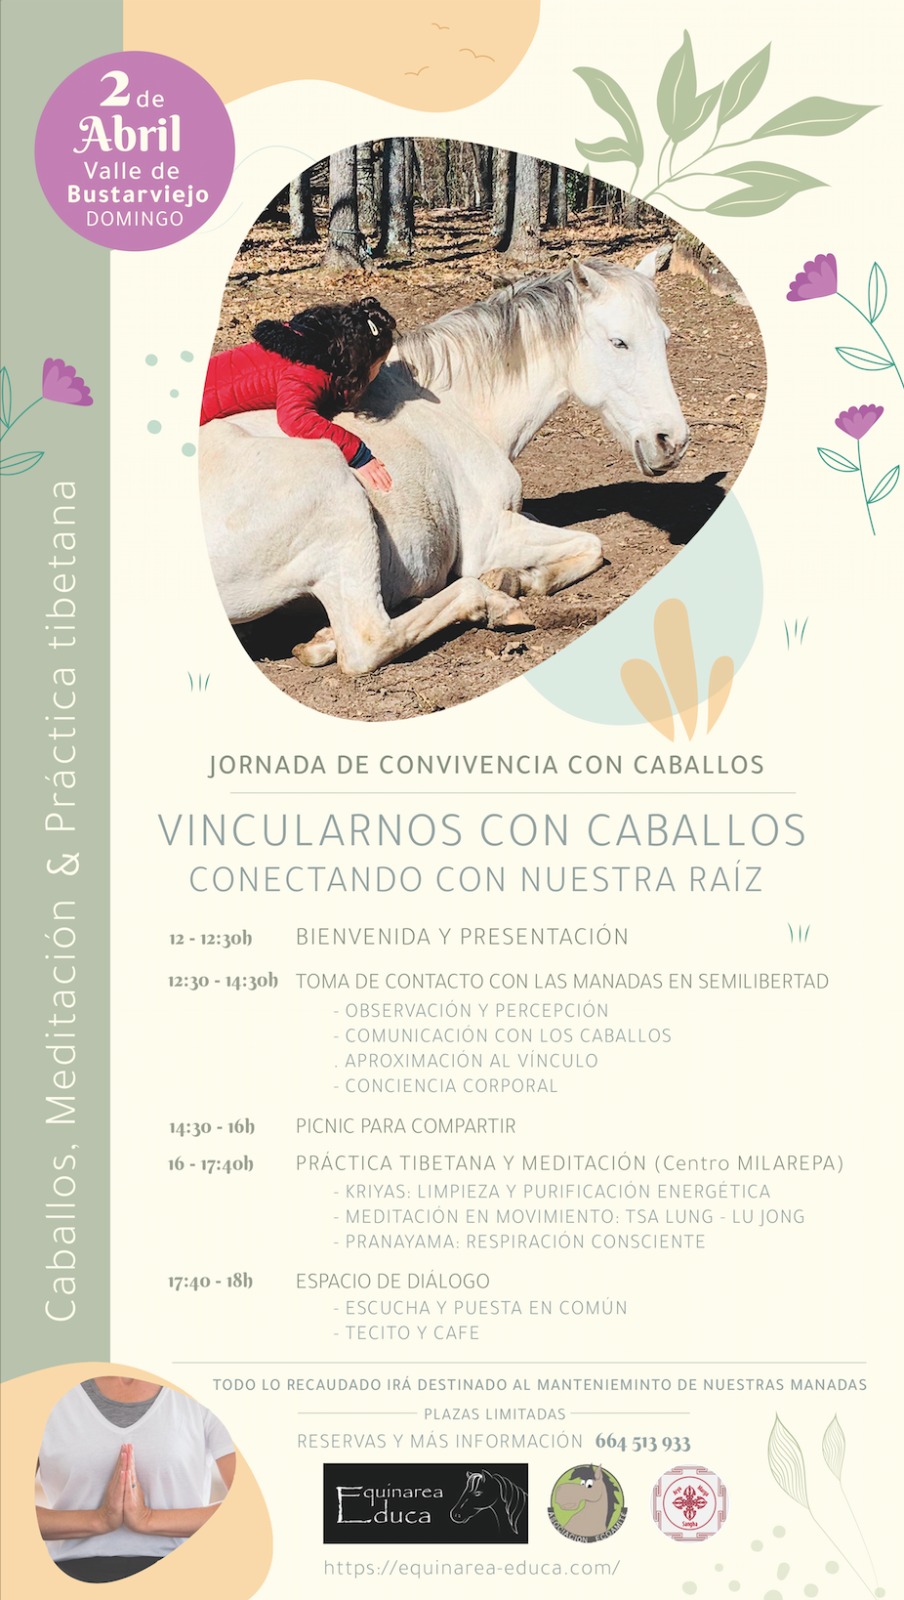 Domingo 2 de Abril 🐎 Jornada de vínculo y convivencia con caballos 🌱 Equinarea Educa en el Valle de Bustarviejo